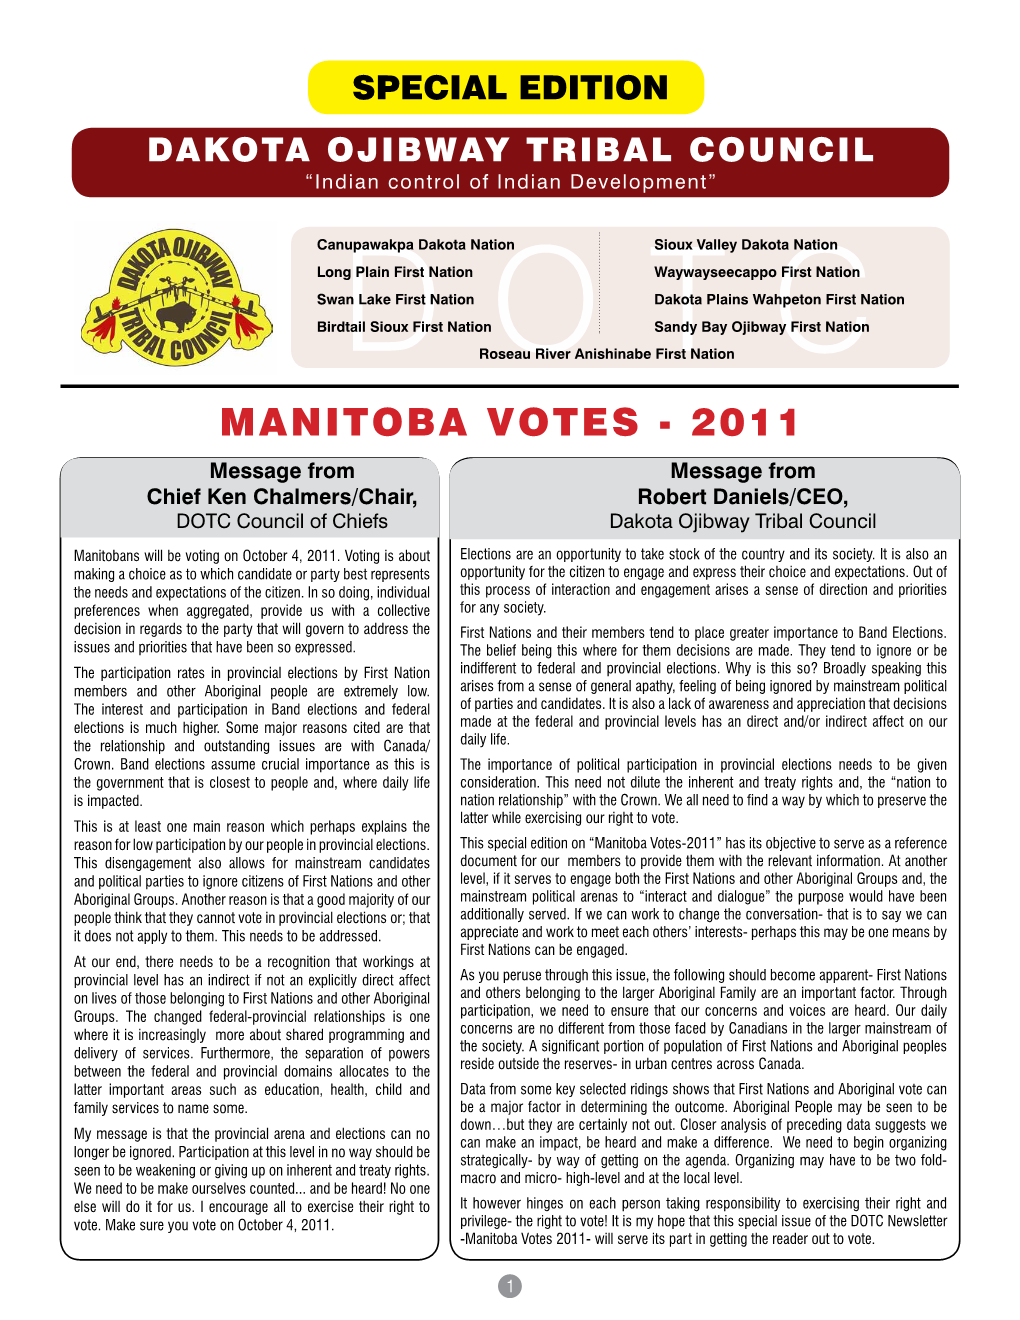 MANITOBA VOTES - 2011 Annual Report